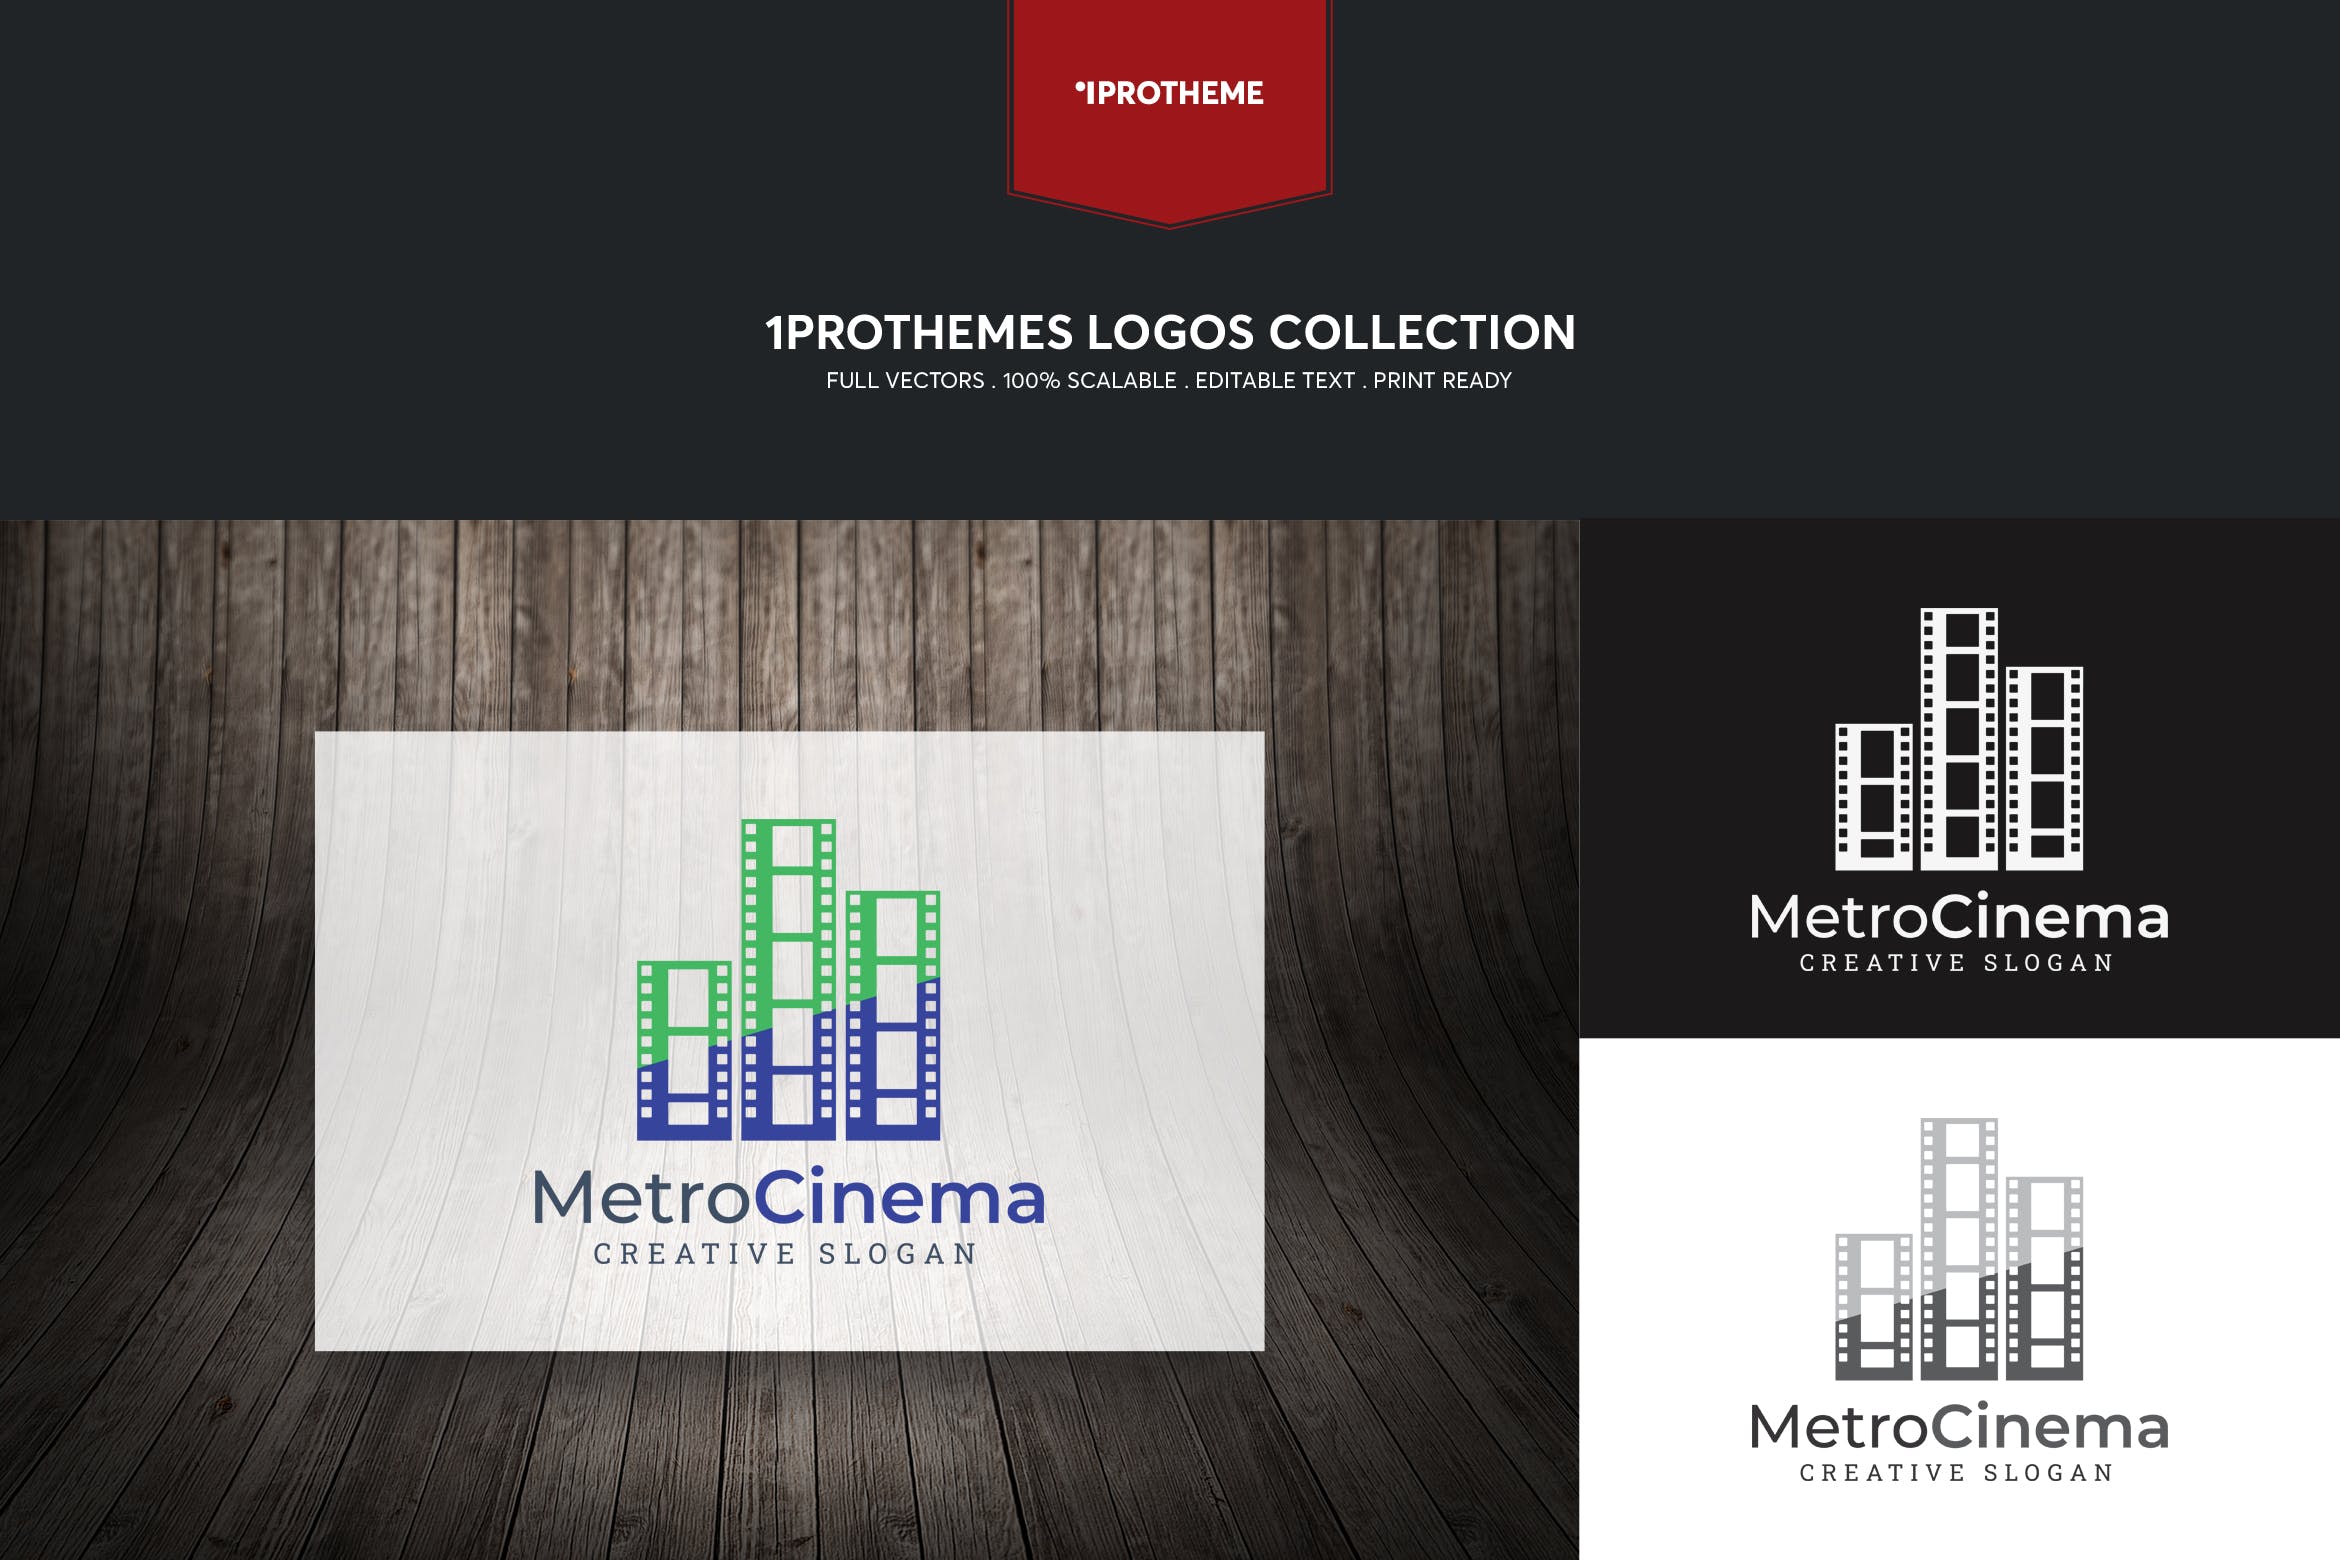 电影公司/影院品牌Logo设计非凡图库精选模板 Metro Cinema Logo Template插图